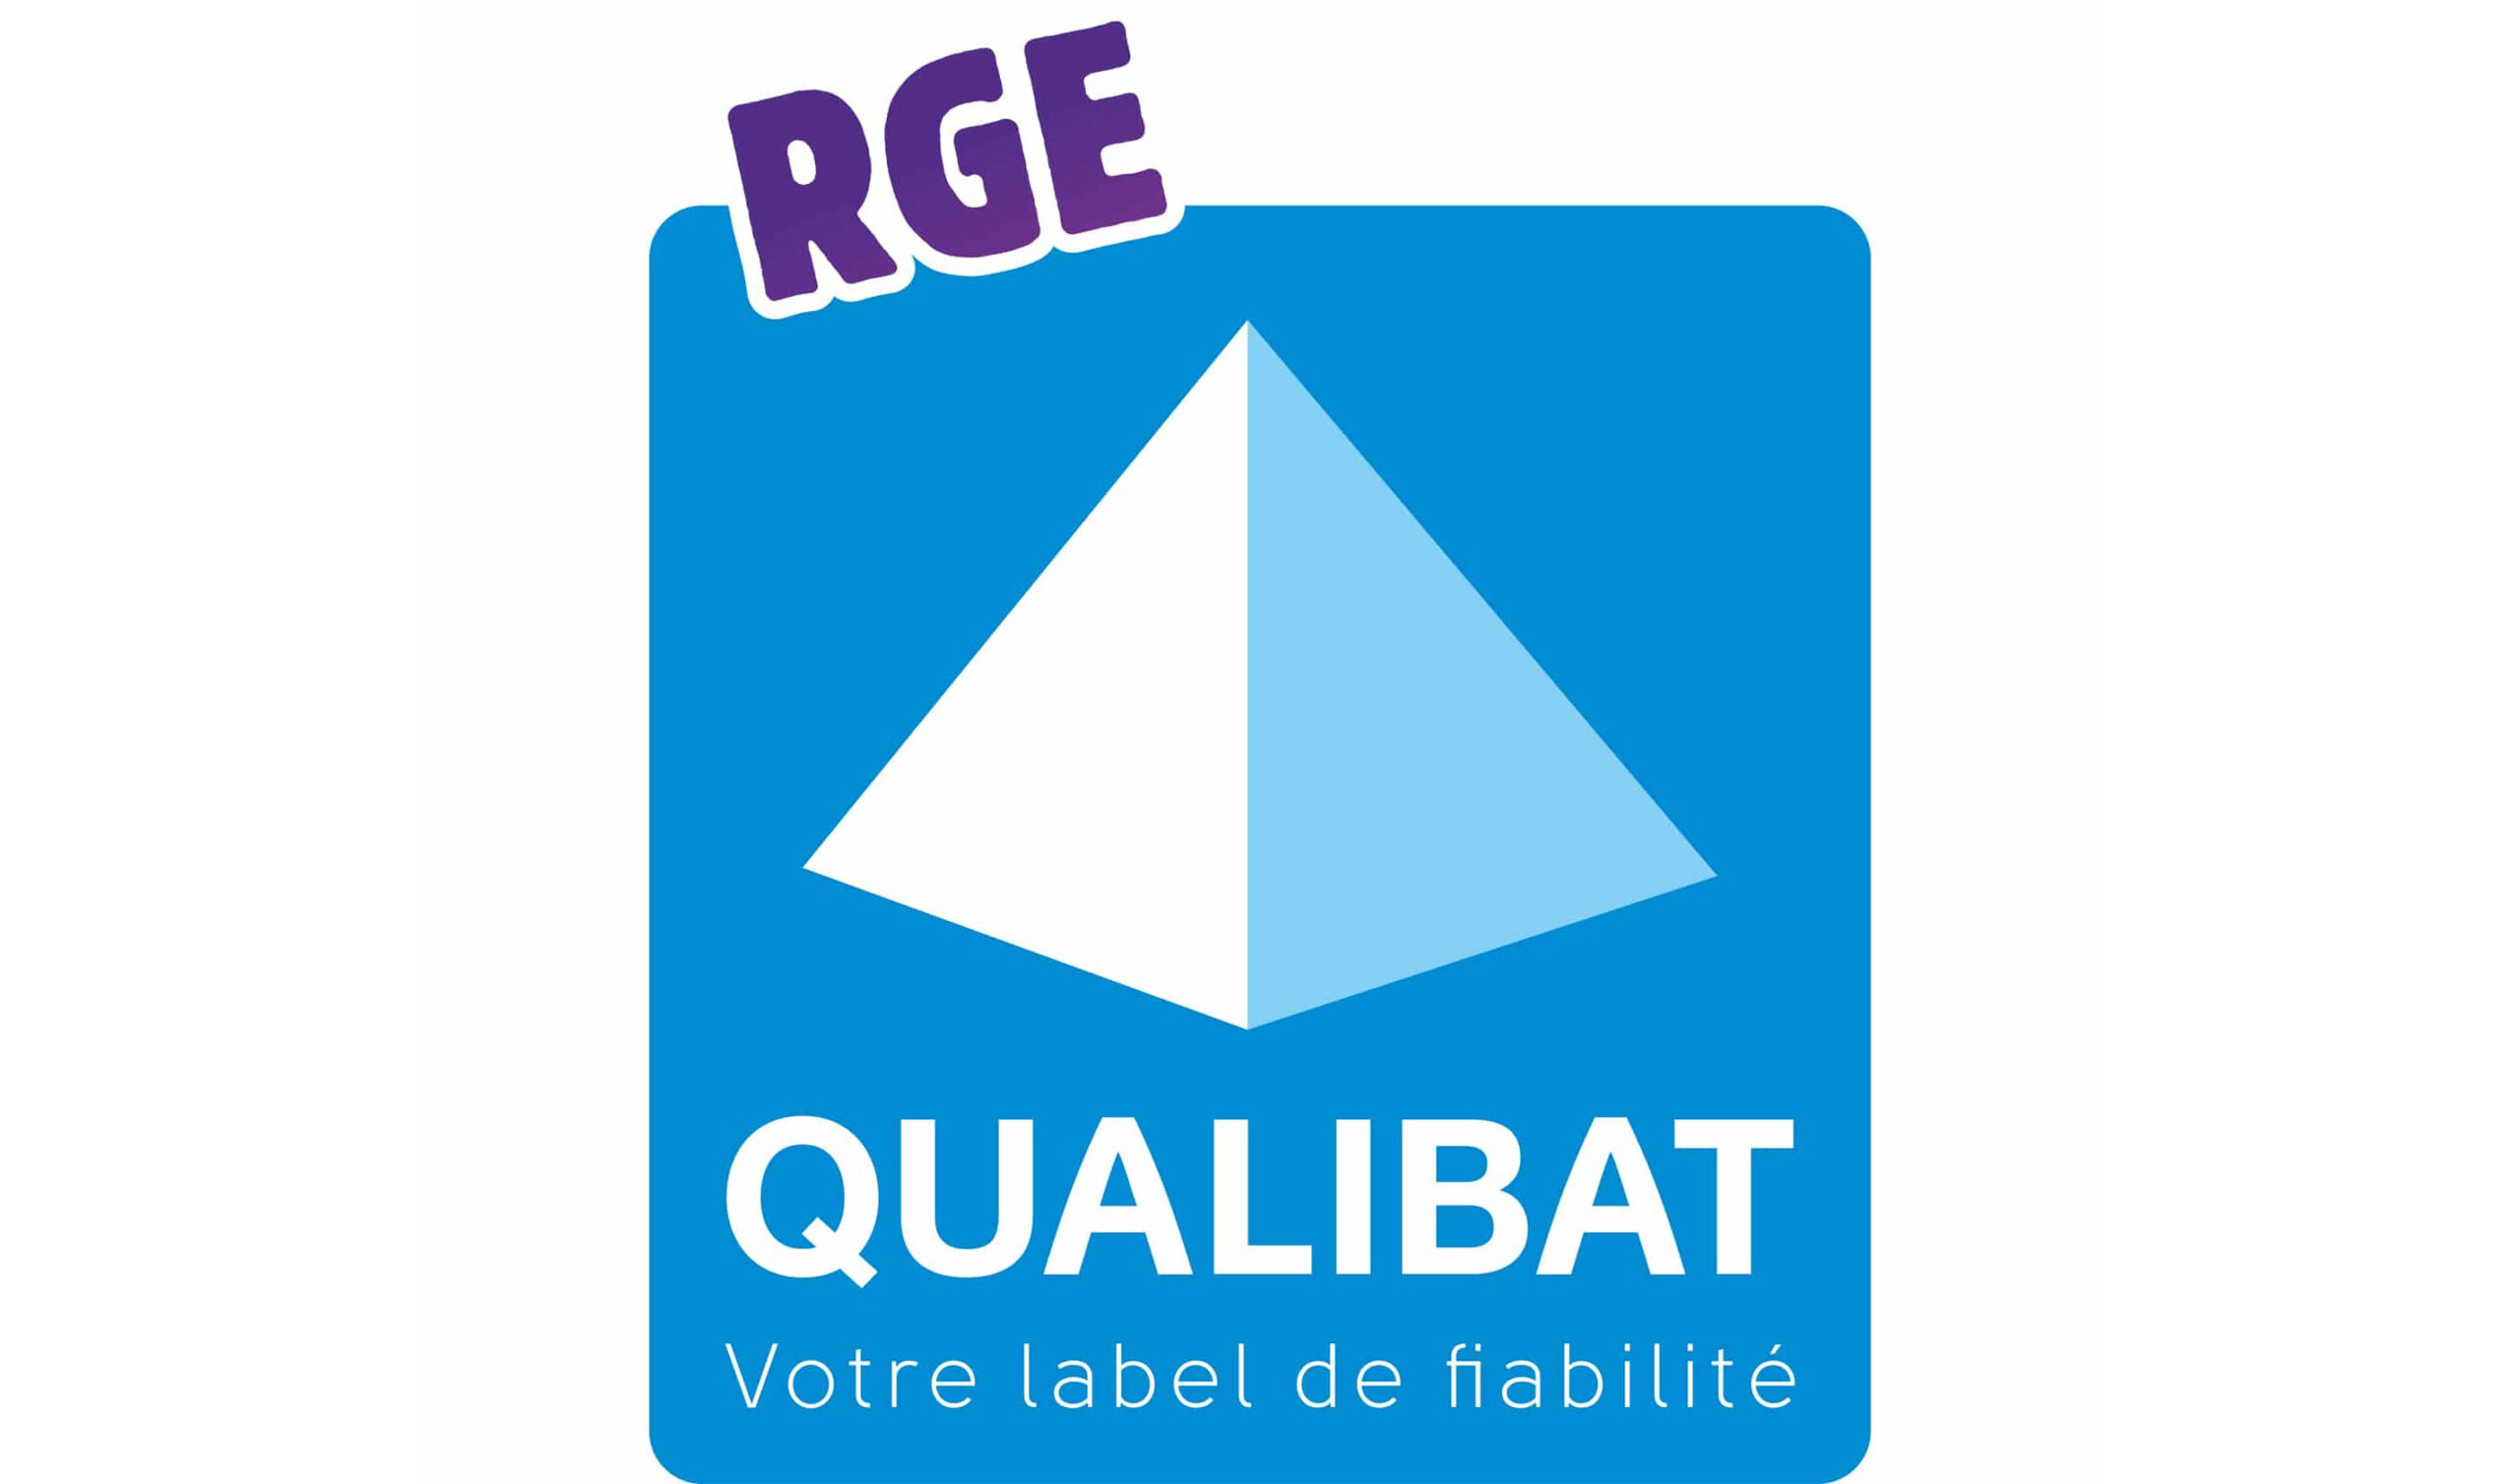 Entreprise Maison Pierre qualifié Qualibat-RGE